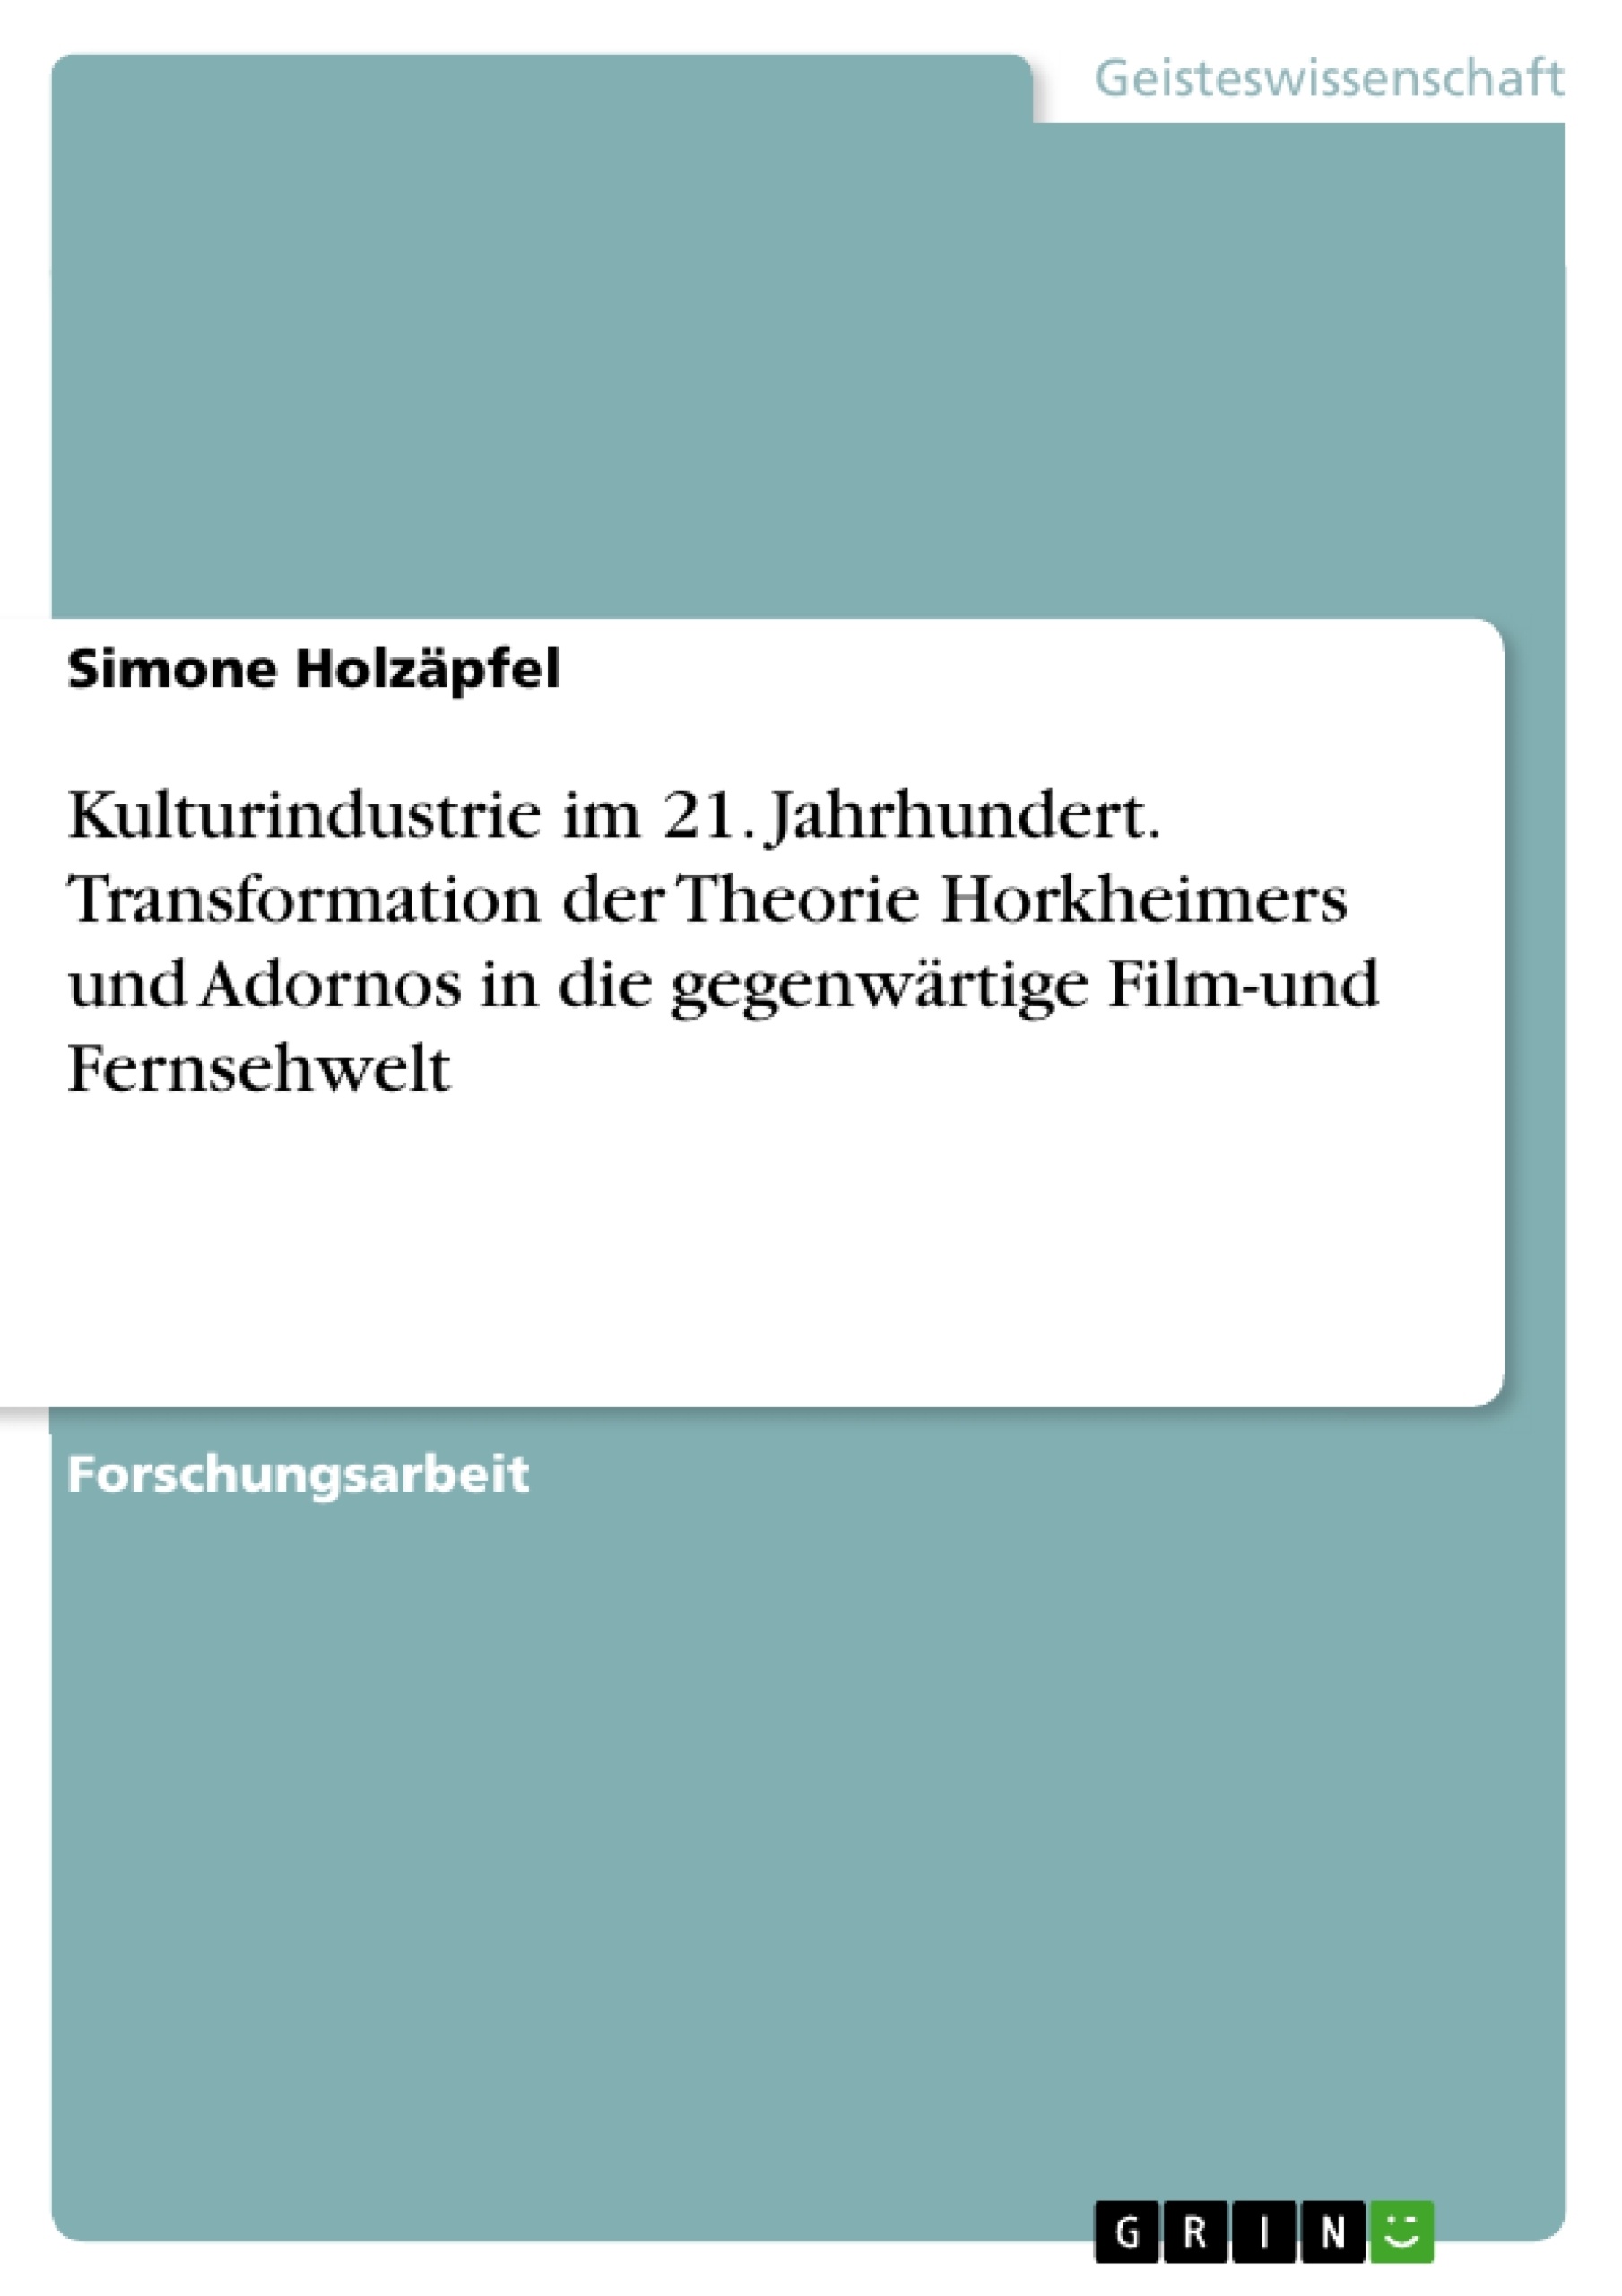 Título: Kulturindustrie im 21. Jahrhundert. Transformation der Theorie Horkheimers und Adornos in die gegenwärtige Film-und Fernsehwelt